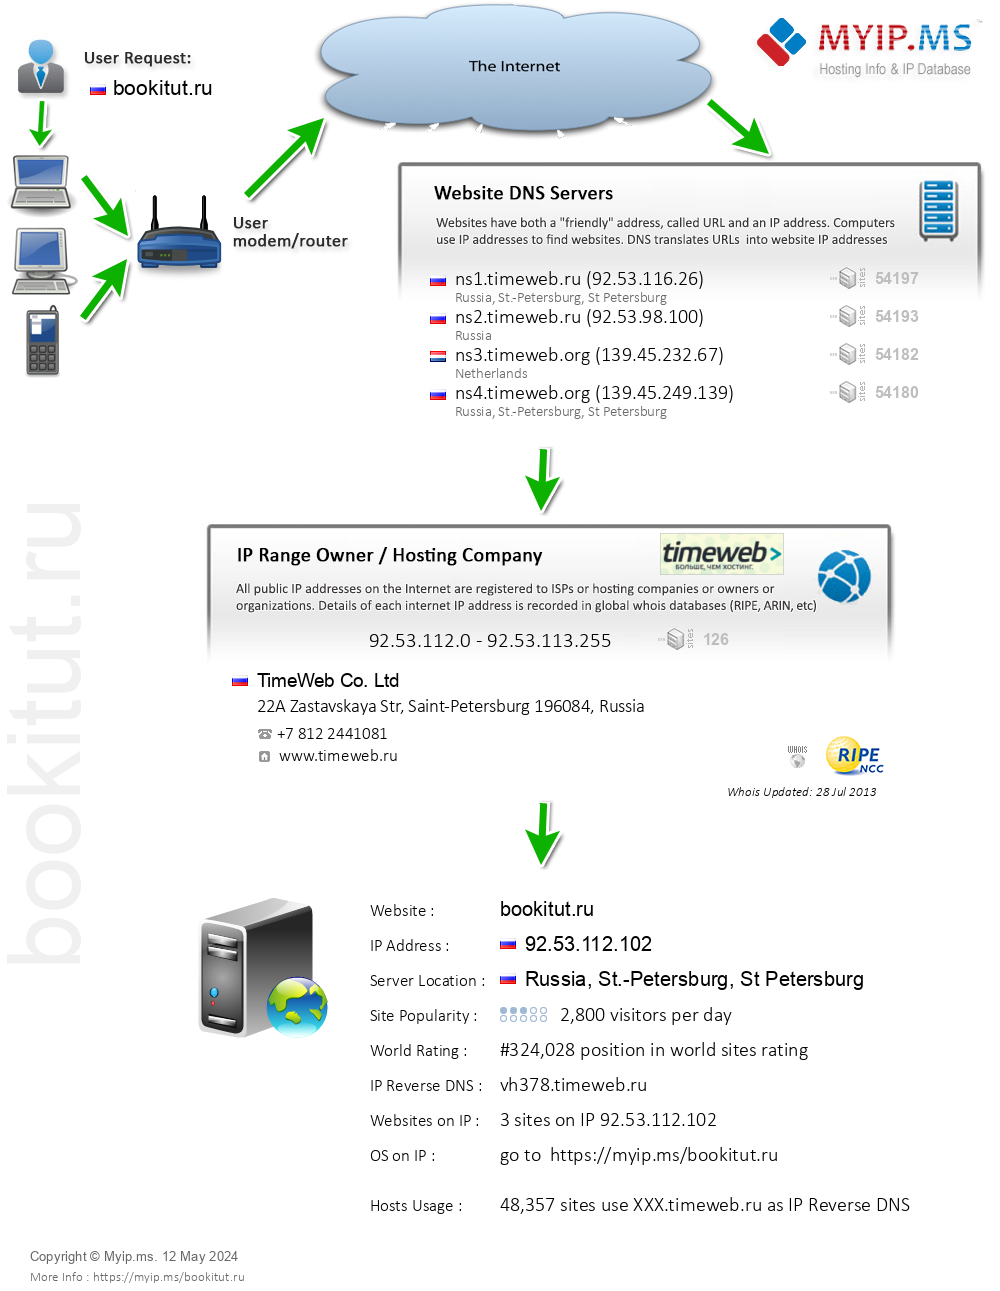 Bookitut.ru - Website Hosting Visual IP Diagram